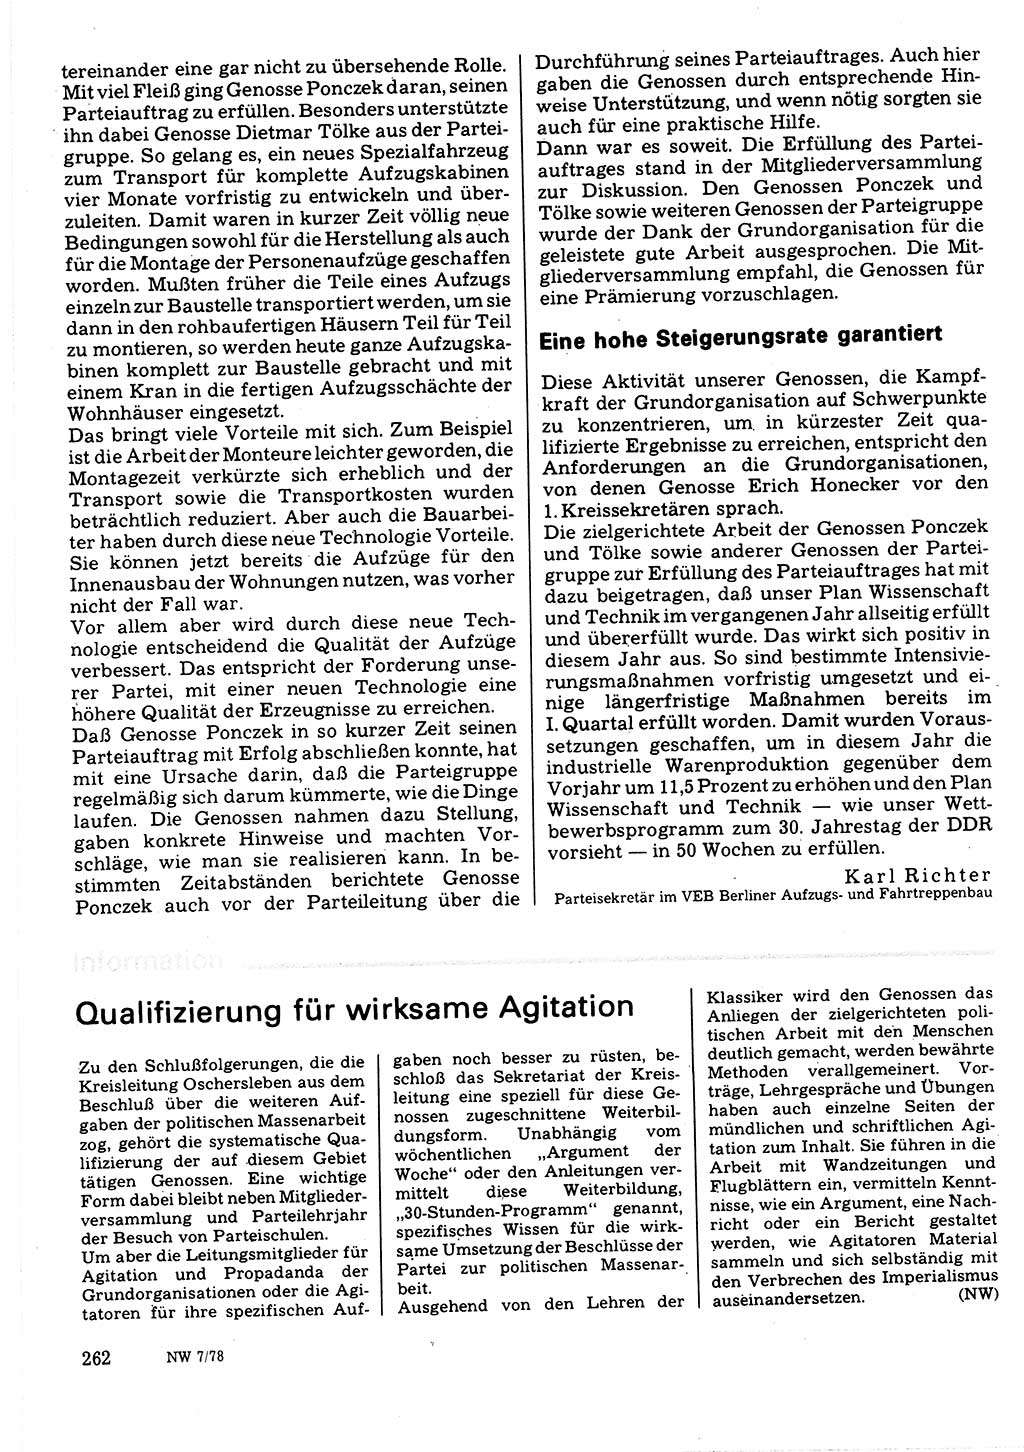 Neuer Weg (NW), Organ des Zentralkomitees (ZK) der SED (Sozialistische Einheitspartei Deutschlands) für Fragen des Parteilebens, 33. Jahrgang [Deutsche Demokratische Republik (DDR)] 1978, Seite 262 (NW ZK SED DDR 1978, S. 262)